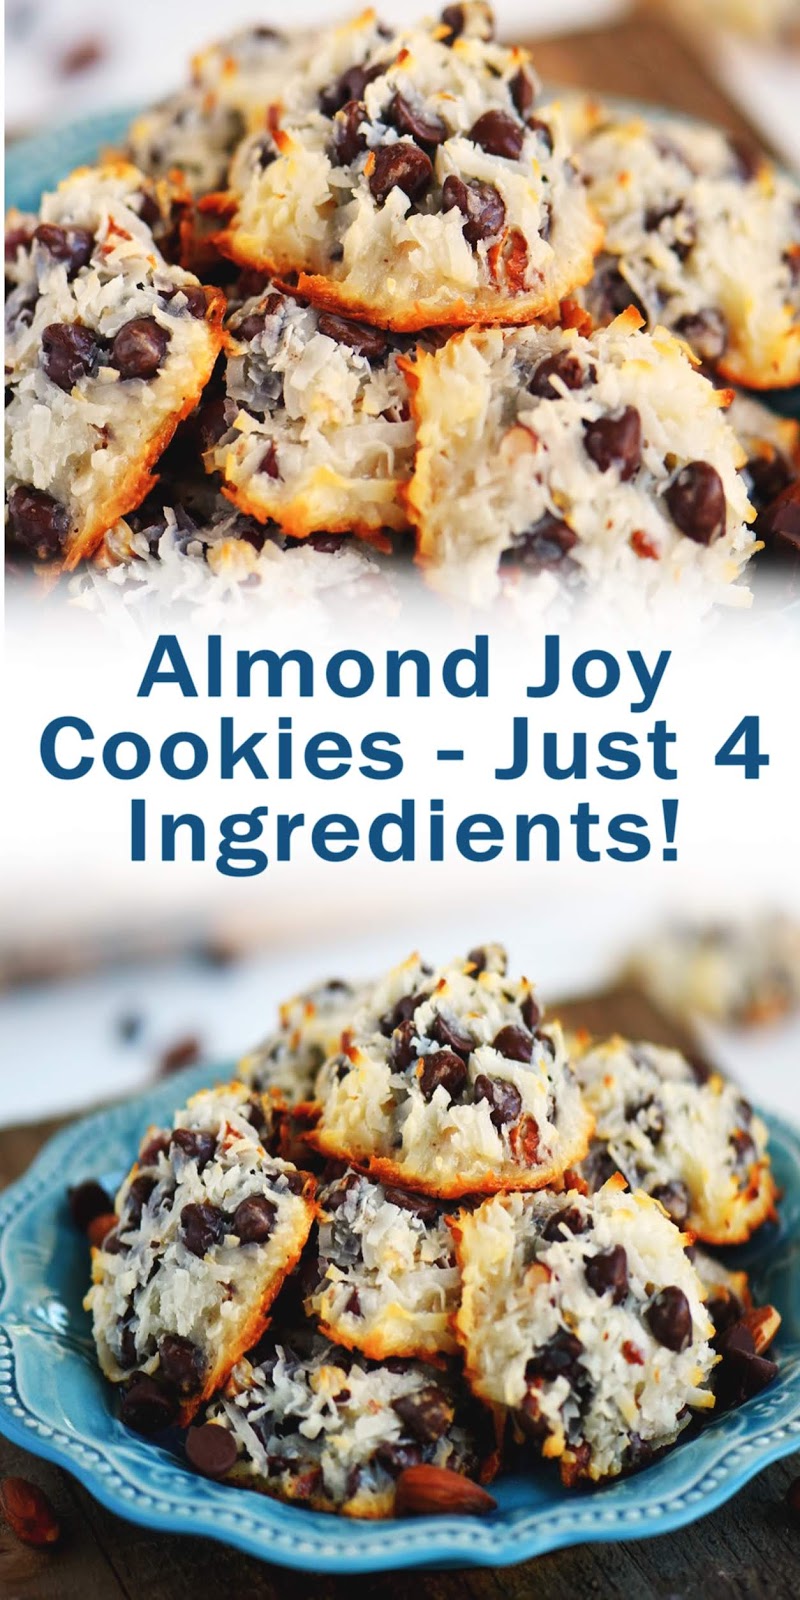 Almond Joy Cookies - Just 4 Ingredients!